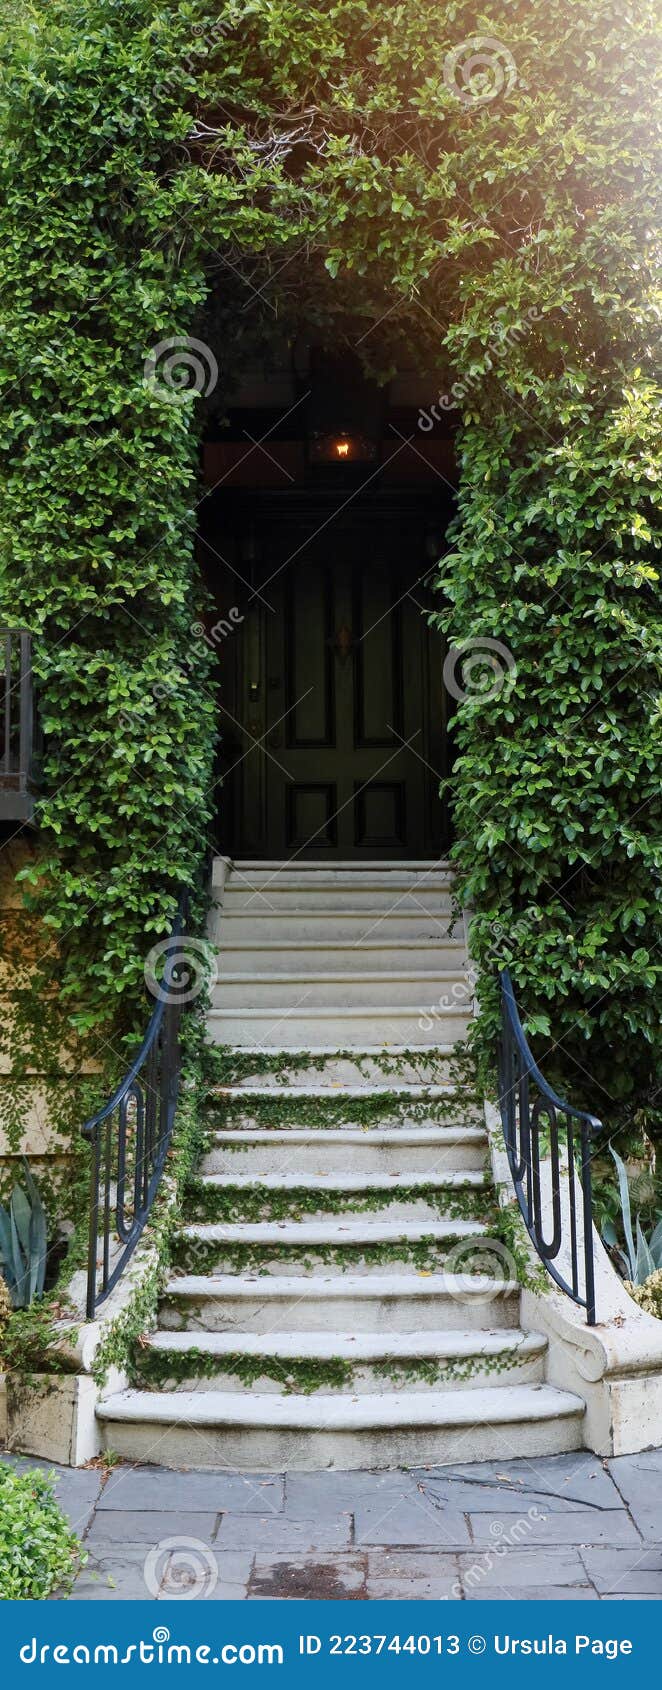 Escaleras Cubiertas Vegetación Escalonadas Hacia Un Edificio O Casa. Imagen de archivo - Imagen de calzada, frontalidad: 223744013